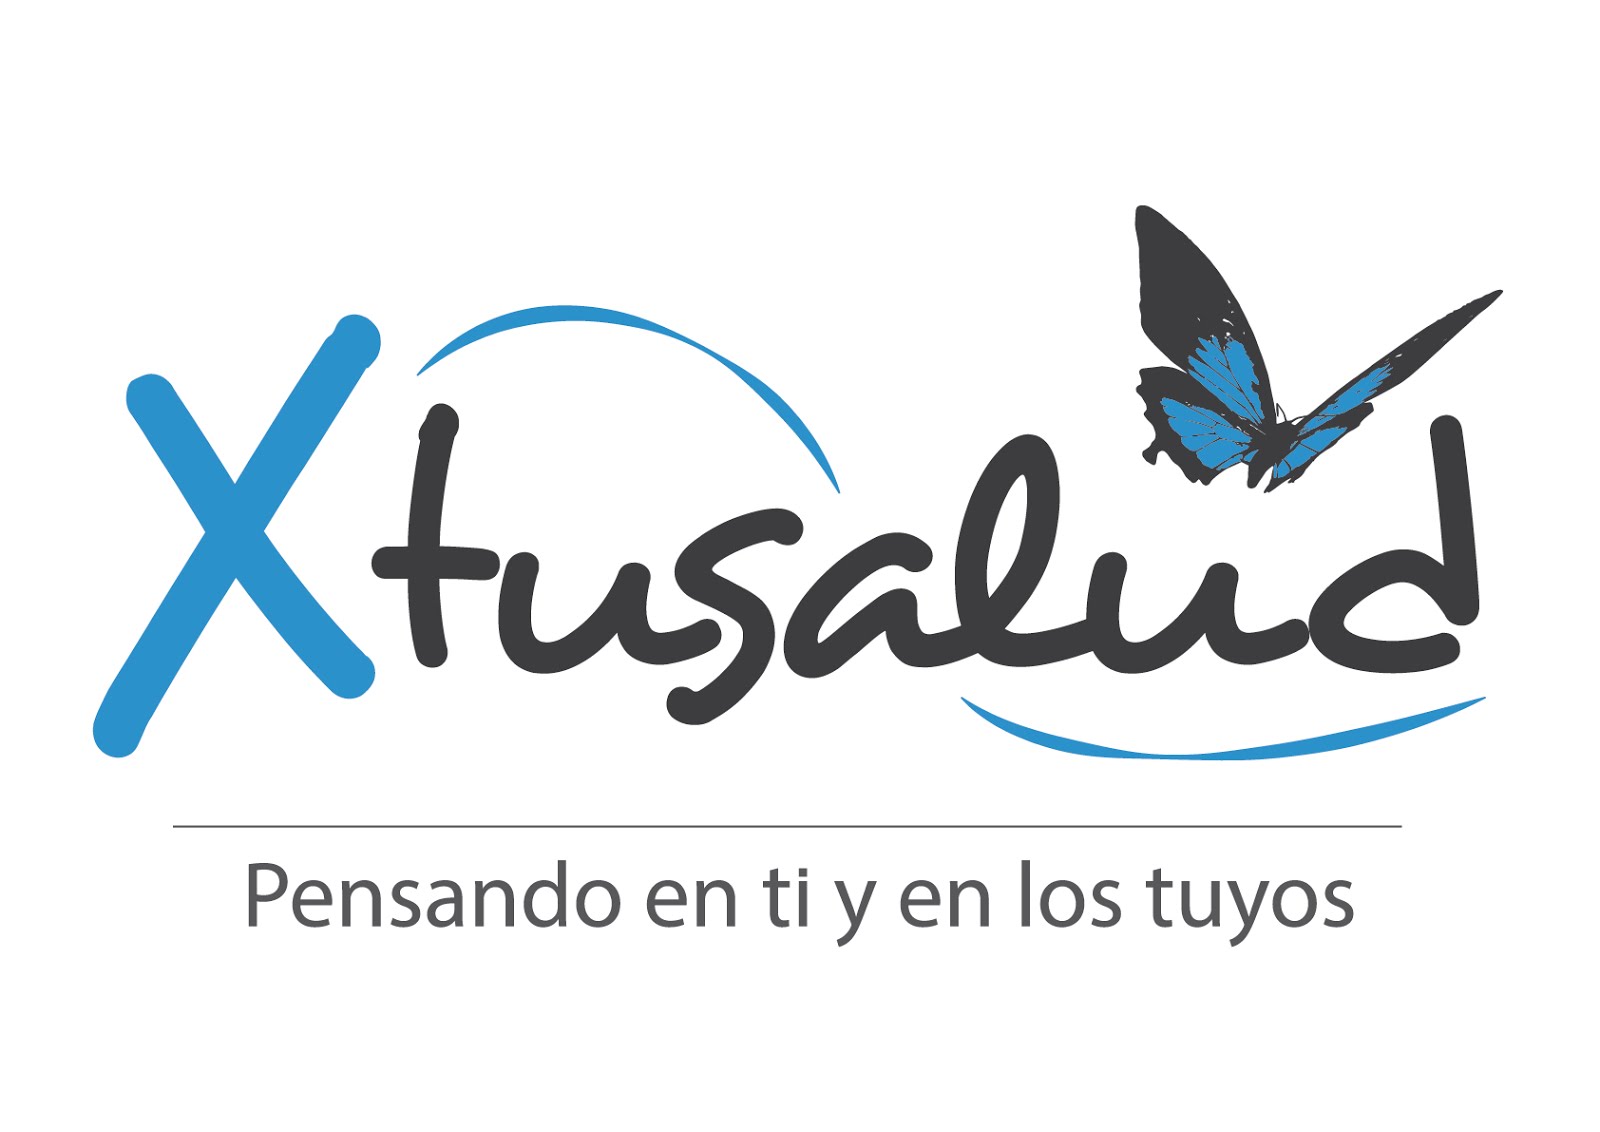 Xtusalud.com plataforma online de Productos Alimenticios, Pafarmacia, Servicios Médicos, Seguros